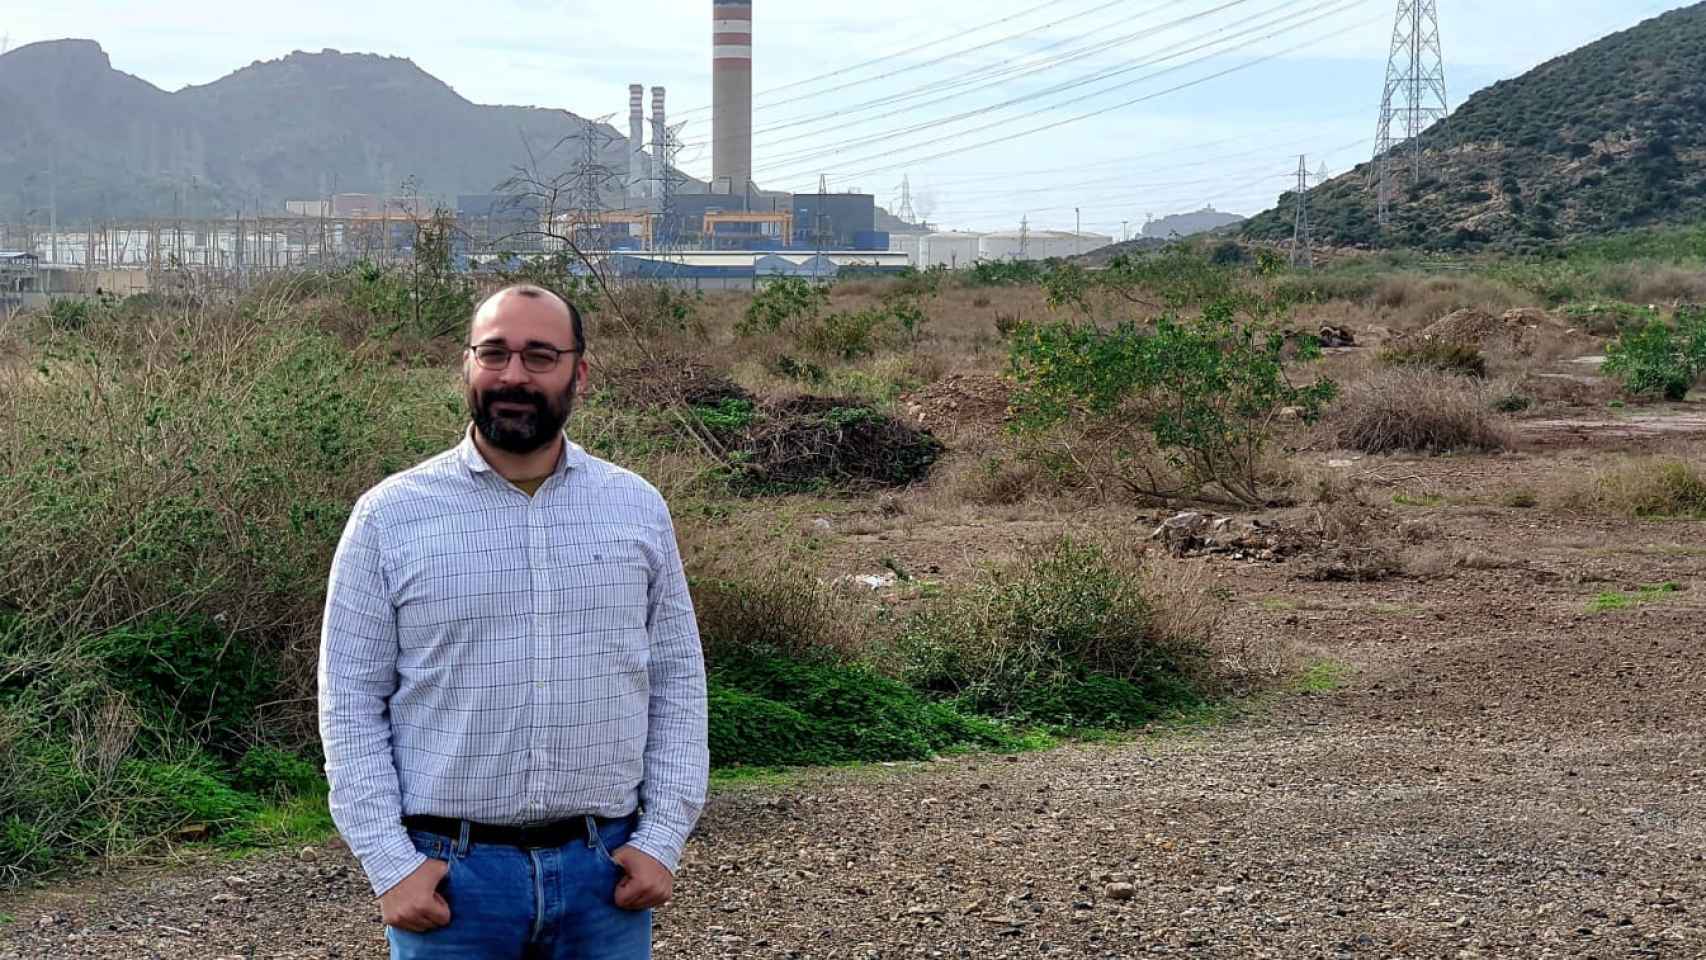 El CEO de Vols-Partners, José David Moreno, posando en los terrenos de Escombreras donde promueve la desaladora más grande de Europa.